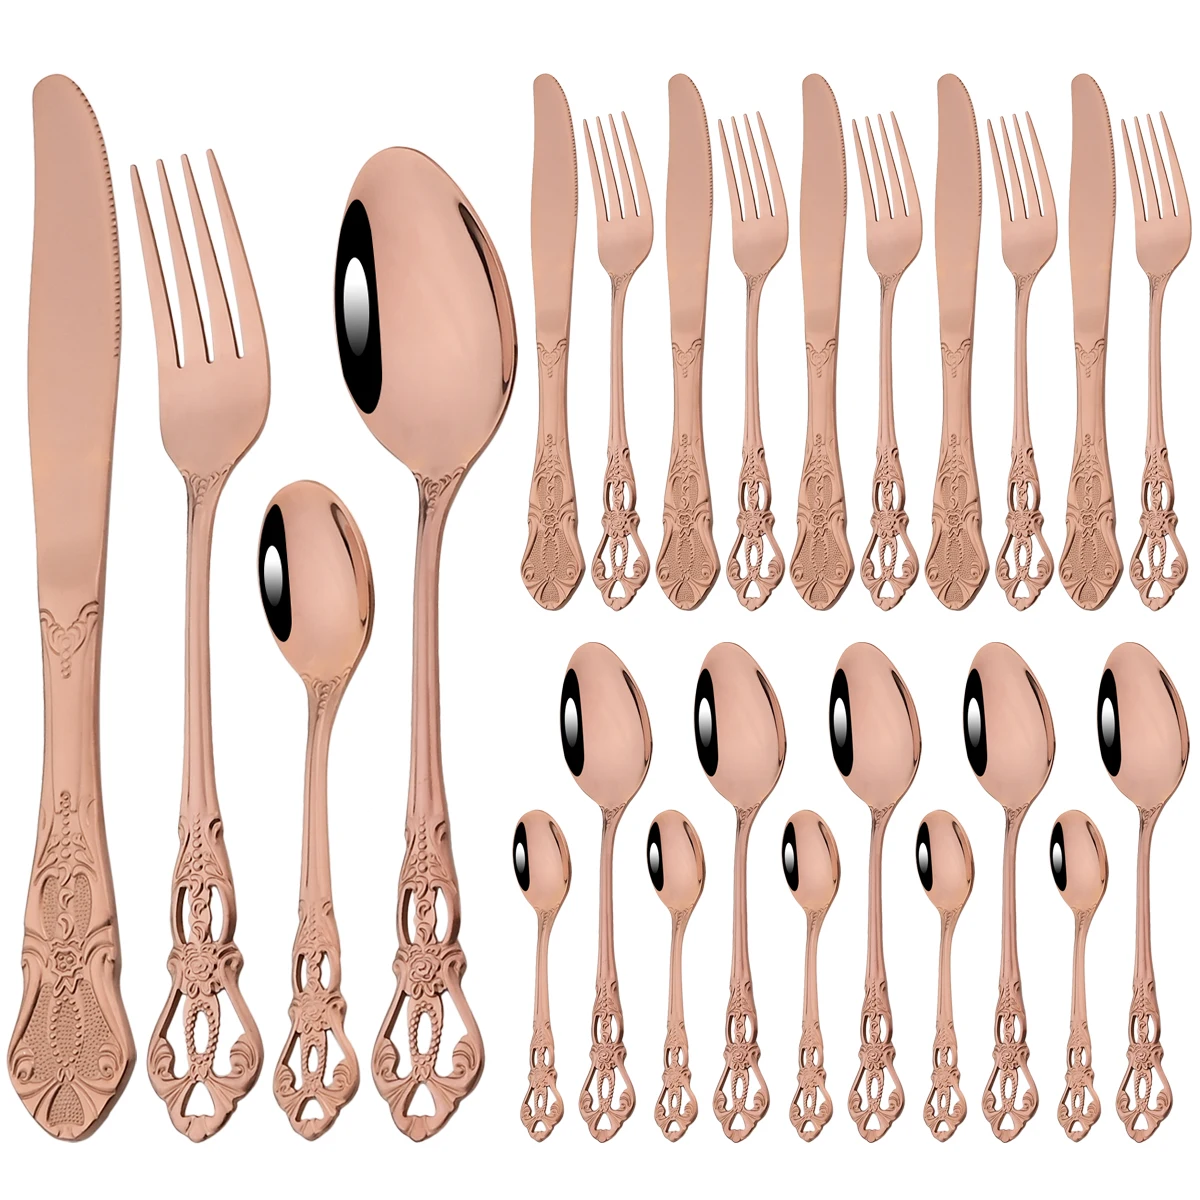 

24Pcs Rose Dinnerware Set Vintage Stainless Steel Cutlery Set Knives Fork Teaspoon Tableware Western Kitchen Flatware Silverware